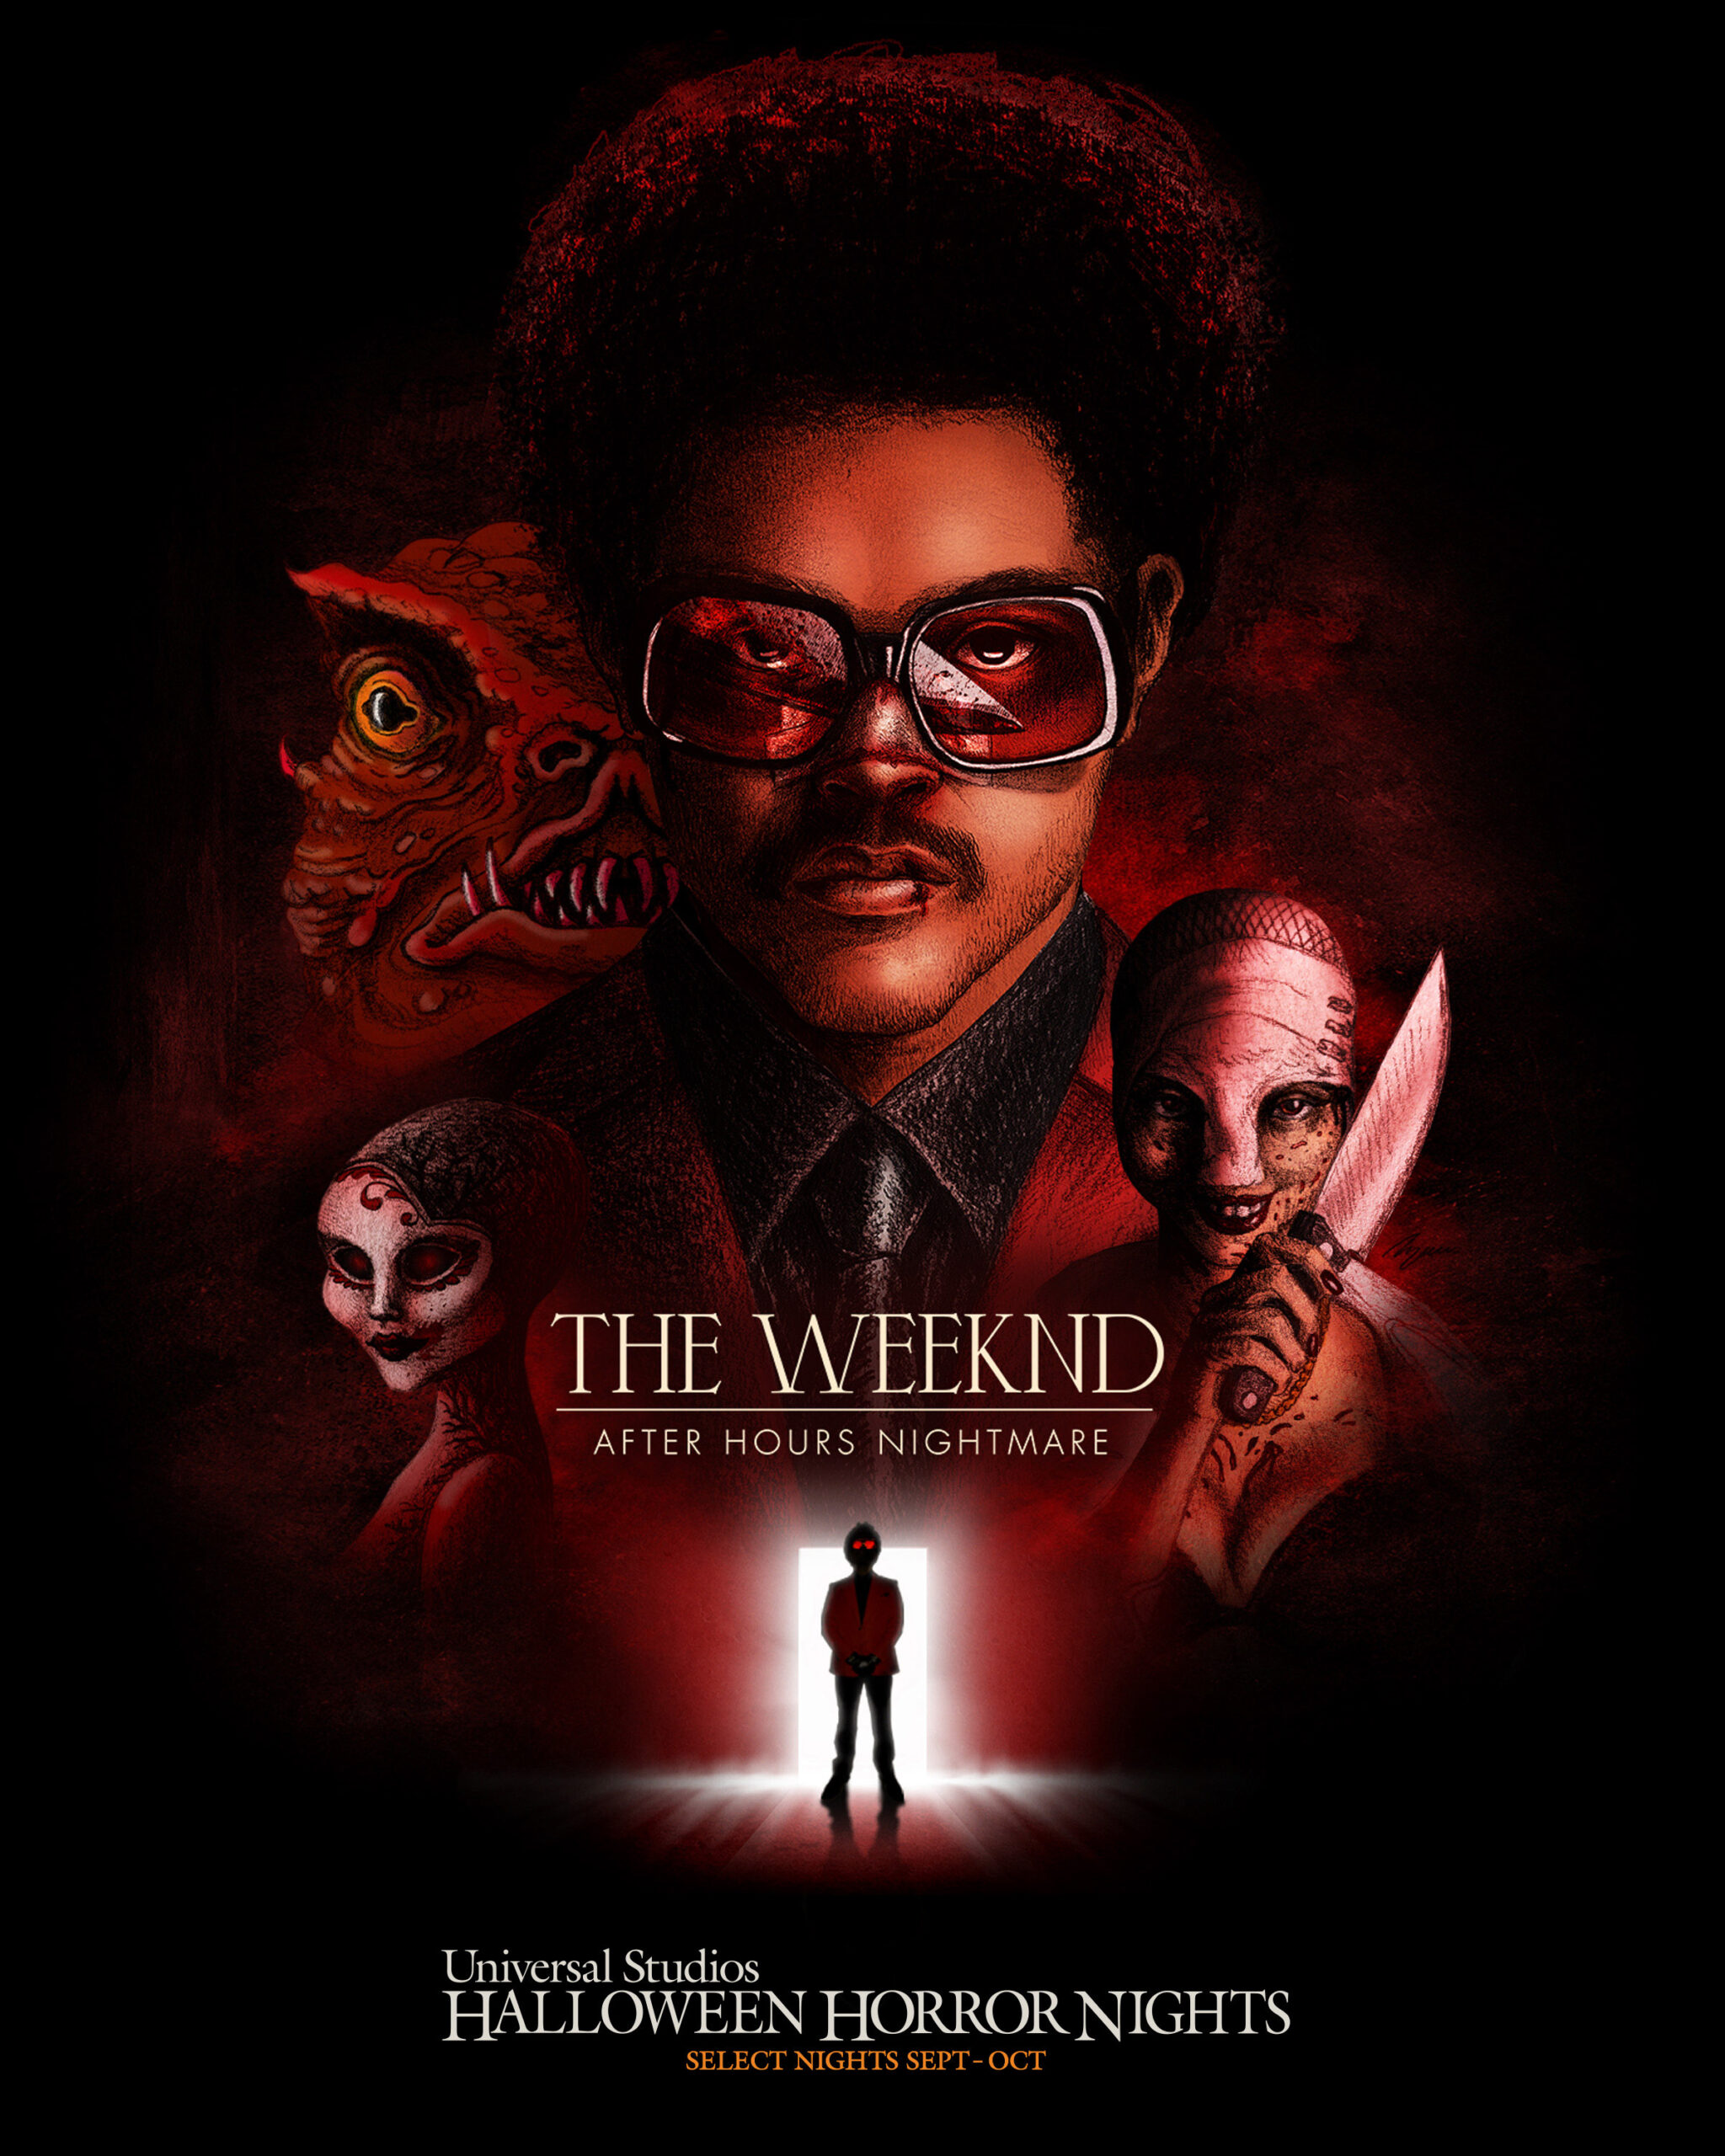 El fenómeno global musical The Weeknd colabora con Halloween Horror Nights de Universal Studios para crear casas embrujadas completamente nuevas inspiradas en su exitoso álbum “After Hours”